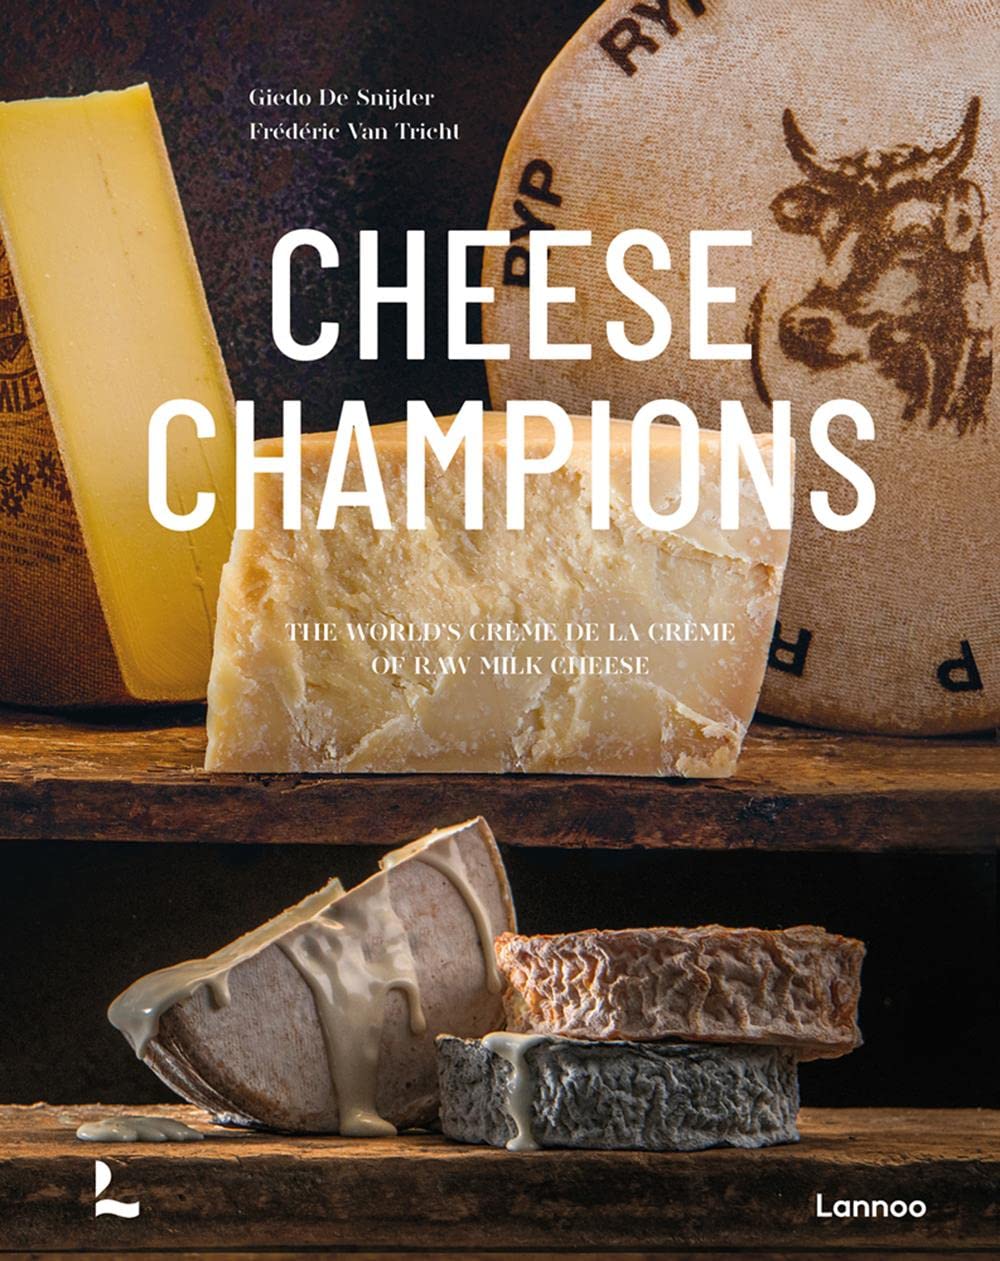 Cheese Champions: The Crème de la Crème of Raw Milk Cheese